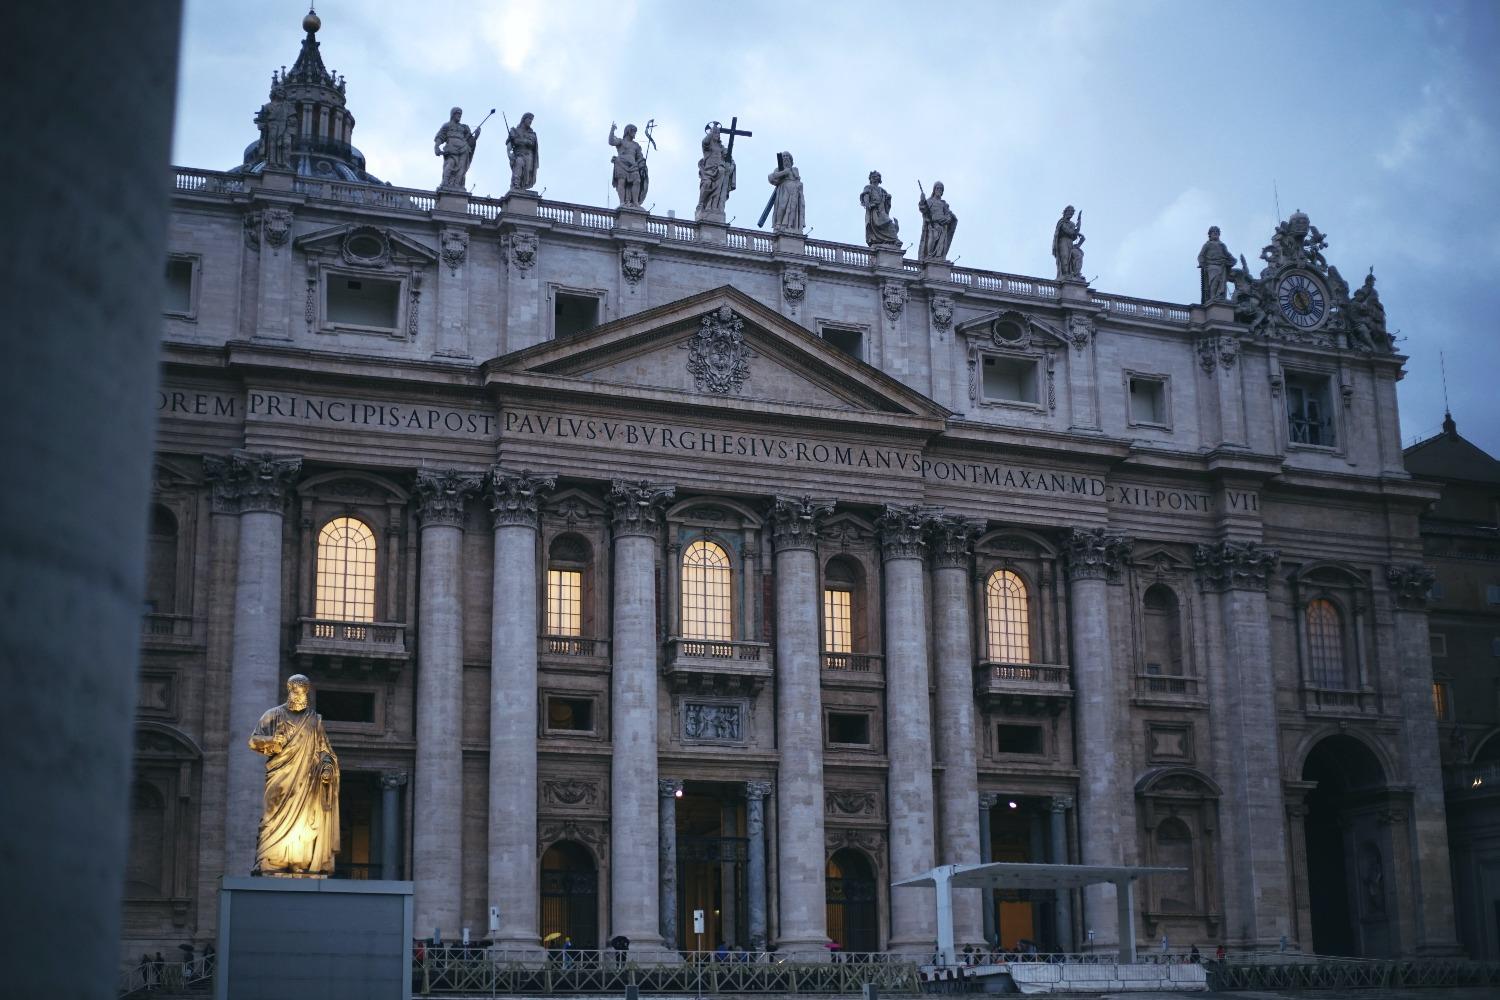 The Façade of St. Peter's Basilica 